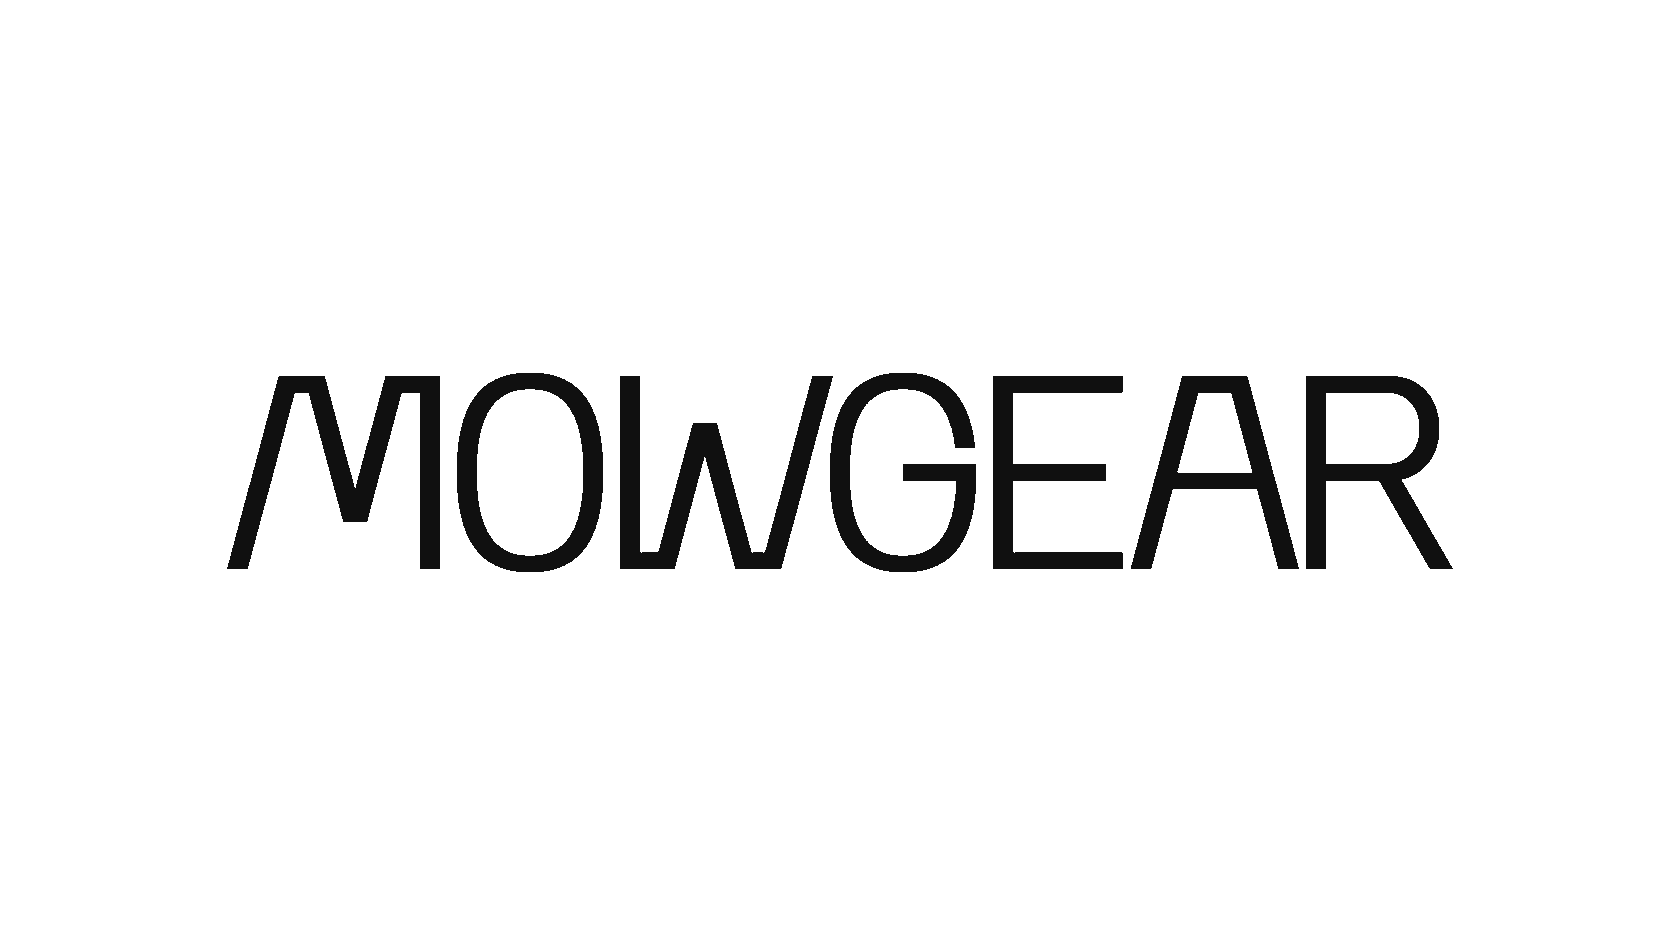 MOWGEAR